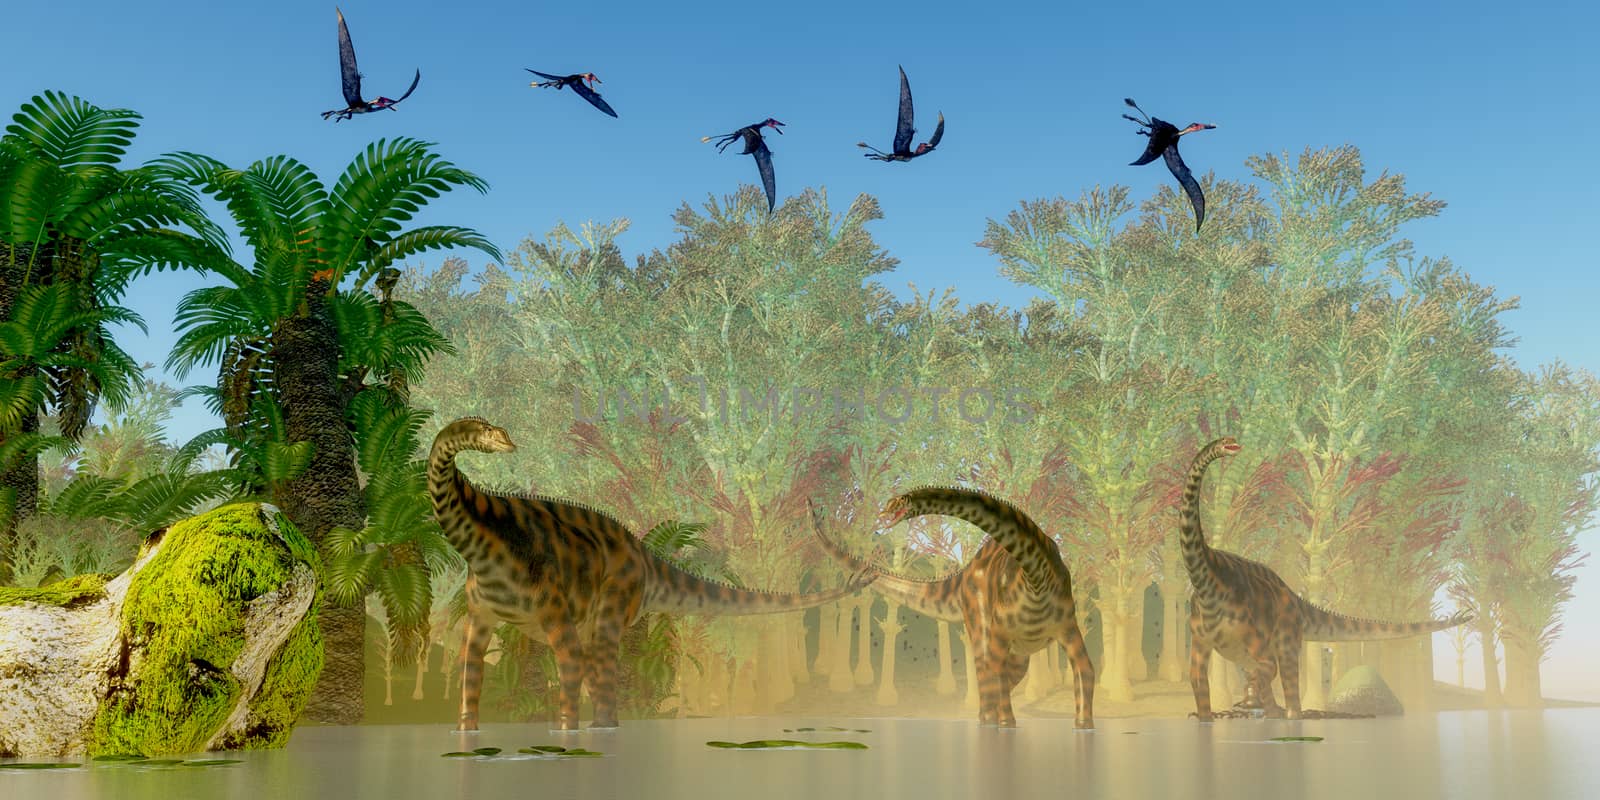 Spinophorosaurus Dinosaurs Swamp by Catmando